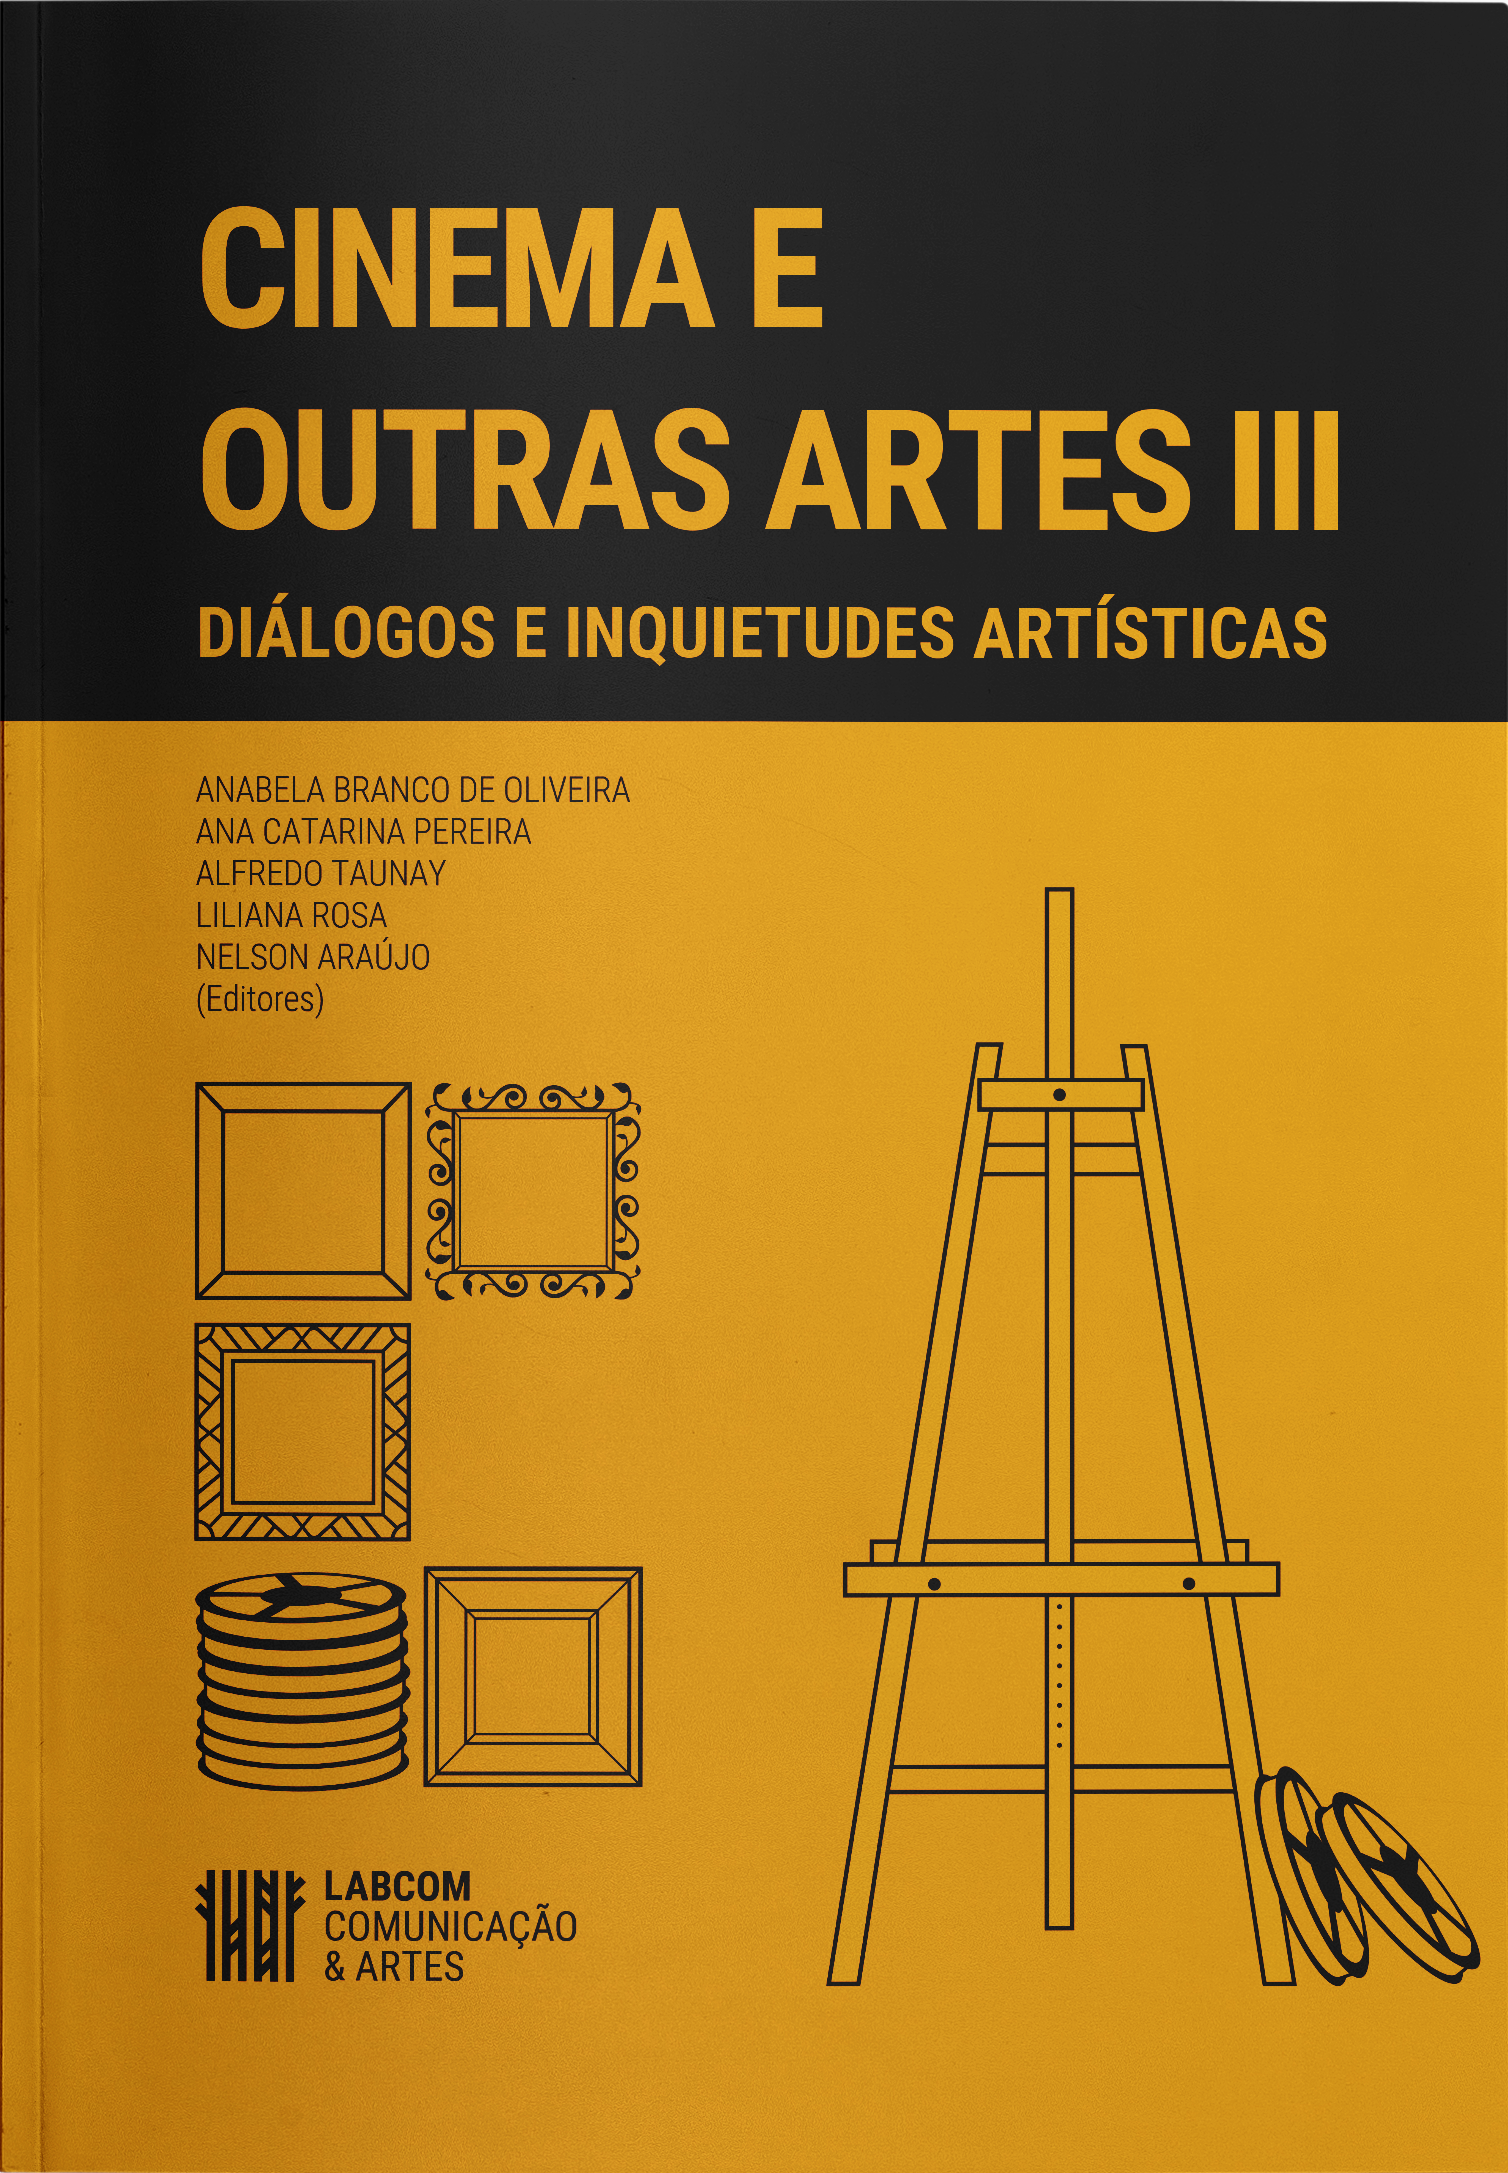 CINEMA E OUTRAS ARTES III